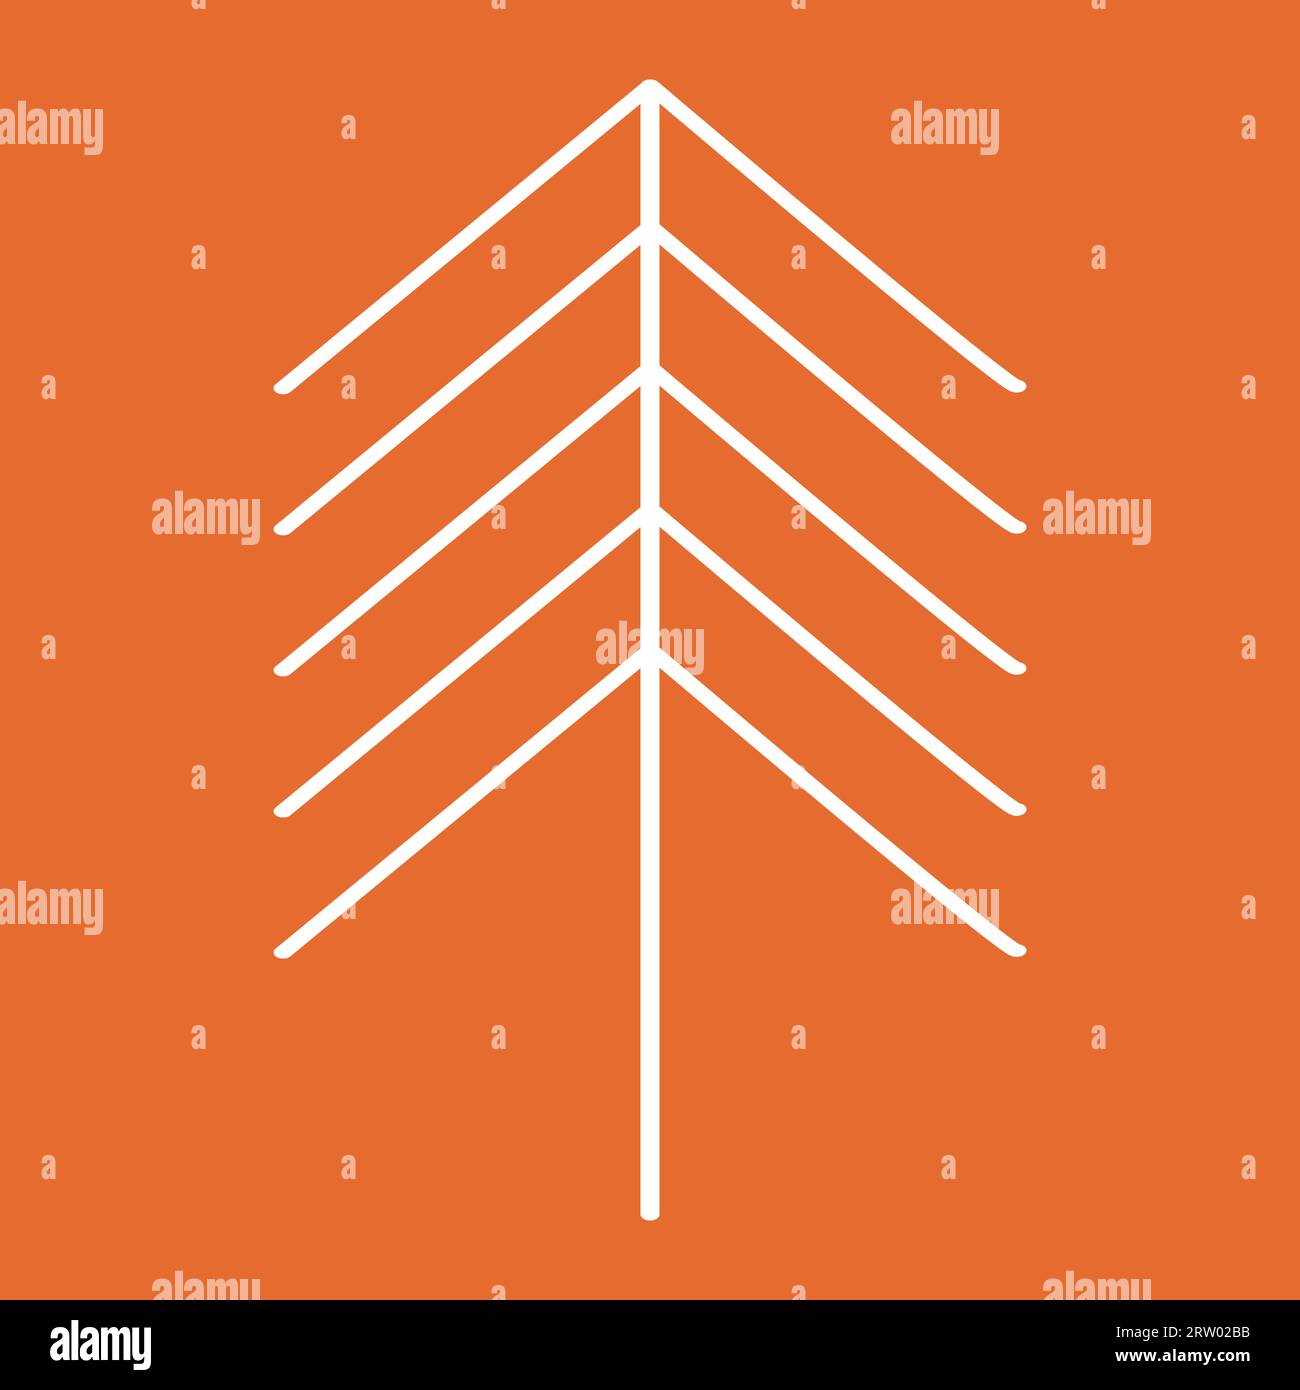 Vereinfachte Weihnachtsbaum- oder Kiefernsilhouette, Designelement für Winterferien, Vektorillustration Stock Vektor